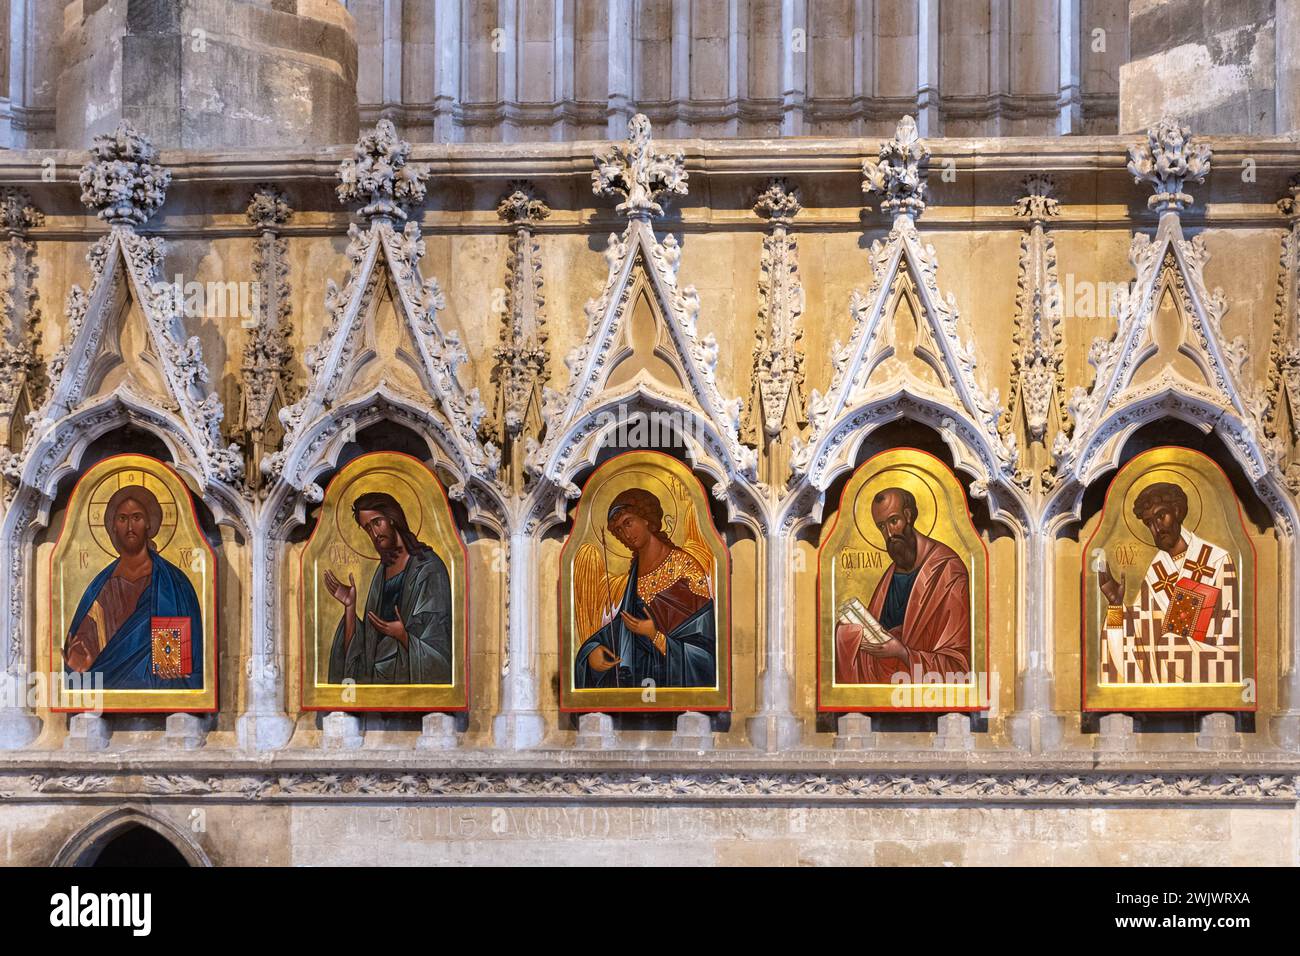 Le icone nel retro-Coro della Cattedrale di Winchester, Hampshire, Inghilterra, Regno Unito, icone della fine del XX secolo di Sergei Fyodorov, tra cui Saint Swithun Foto Stock